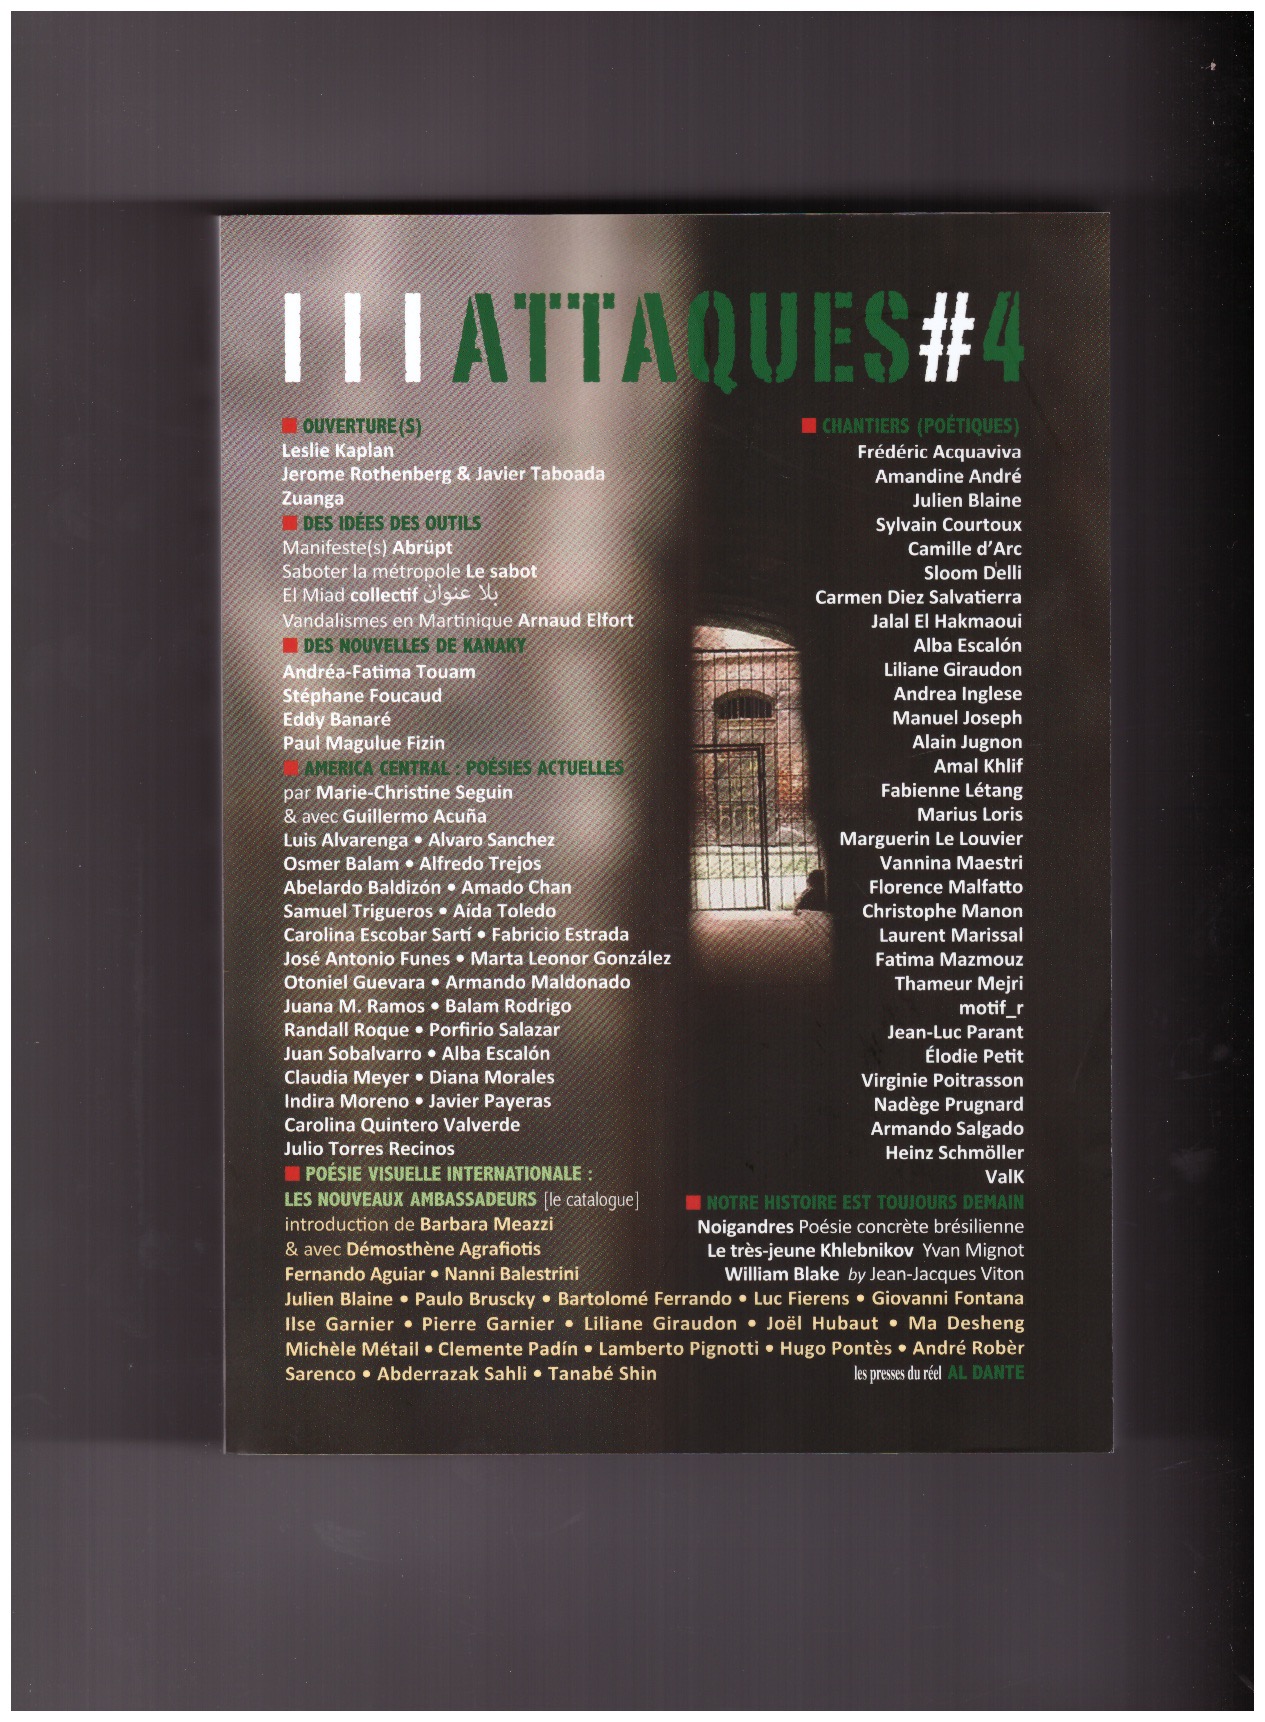 CAUWET, Laurent (ed.) - Attaques #4